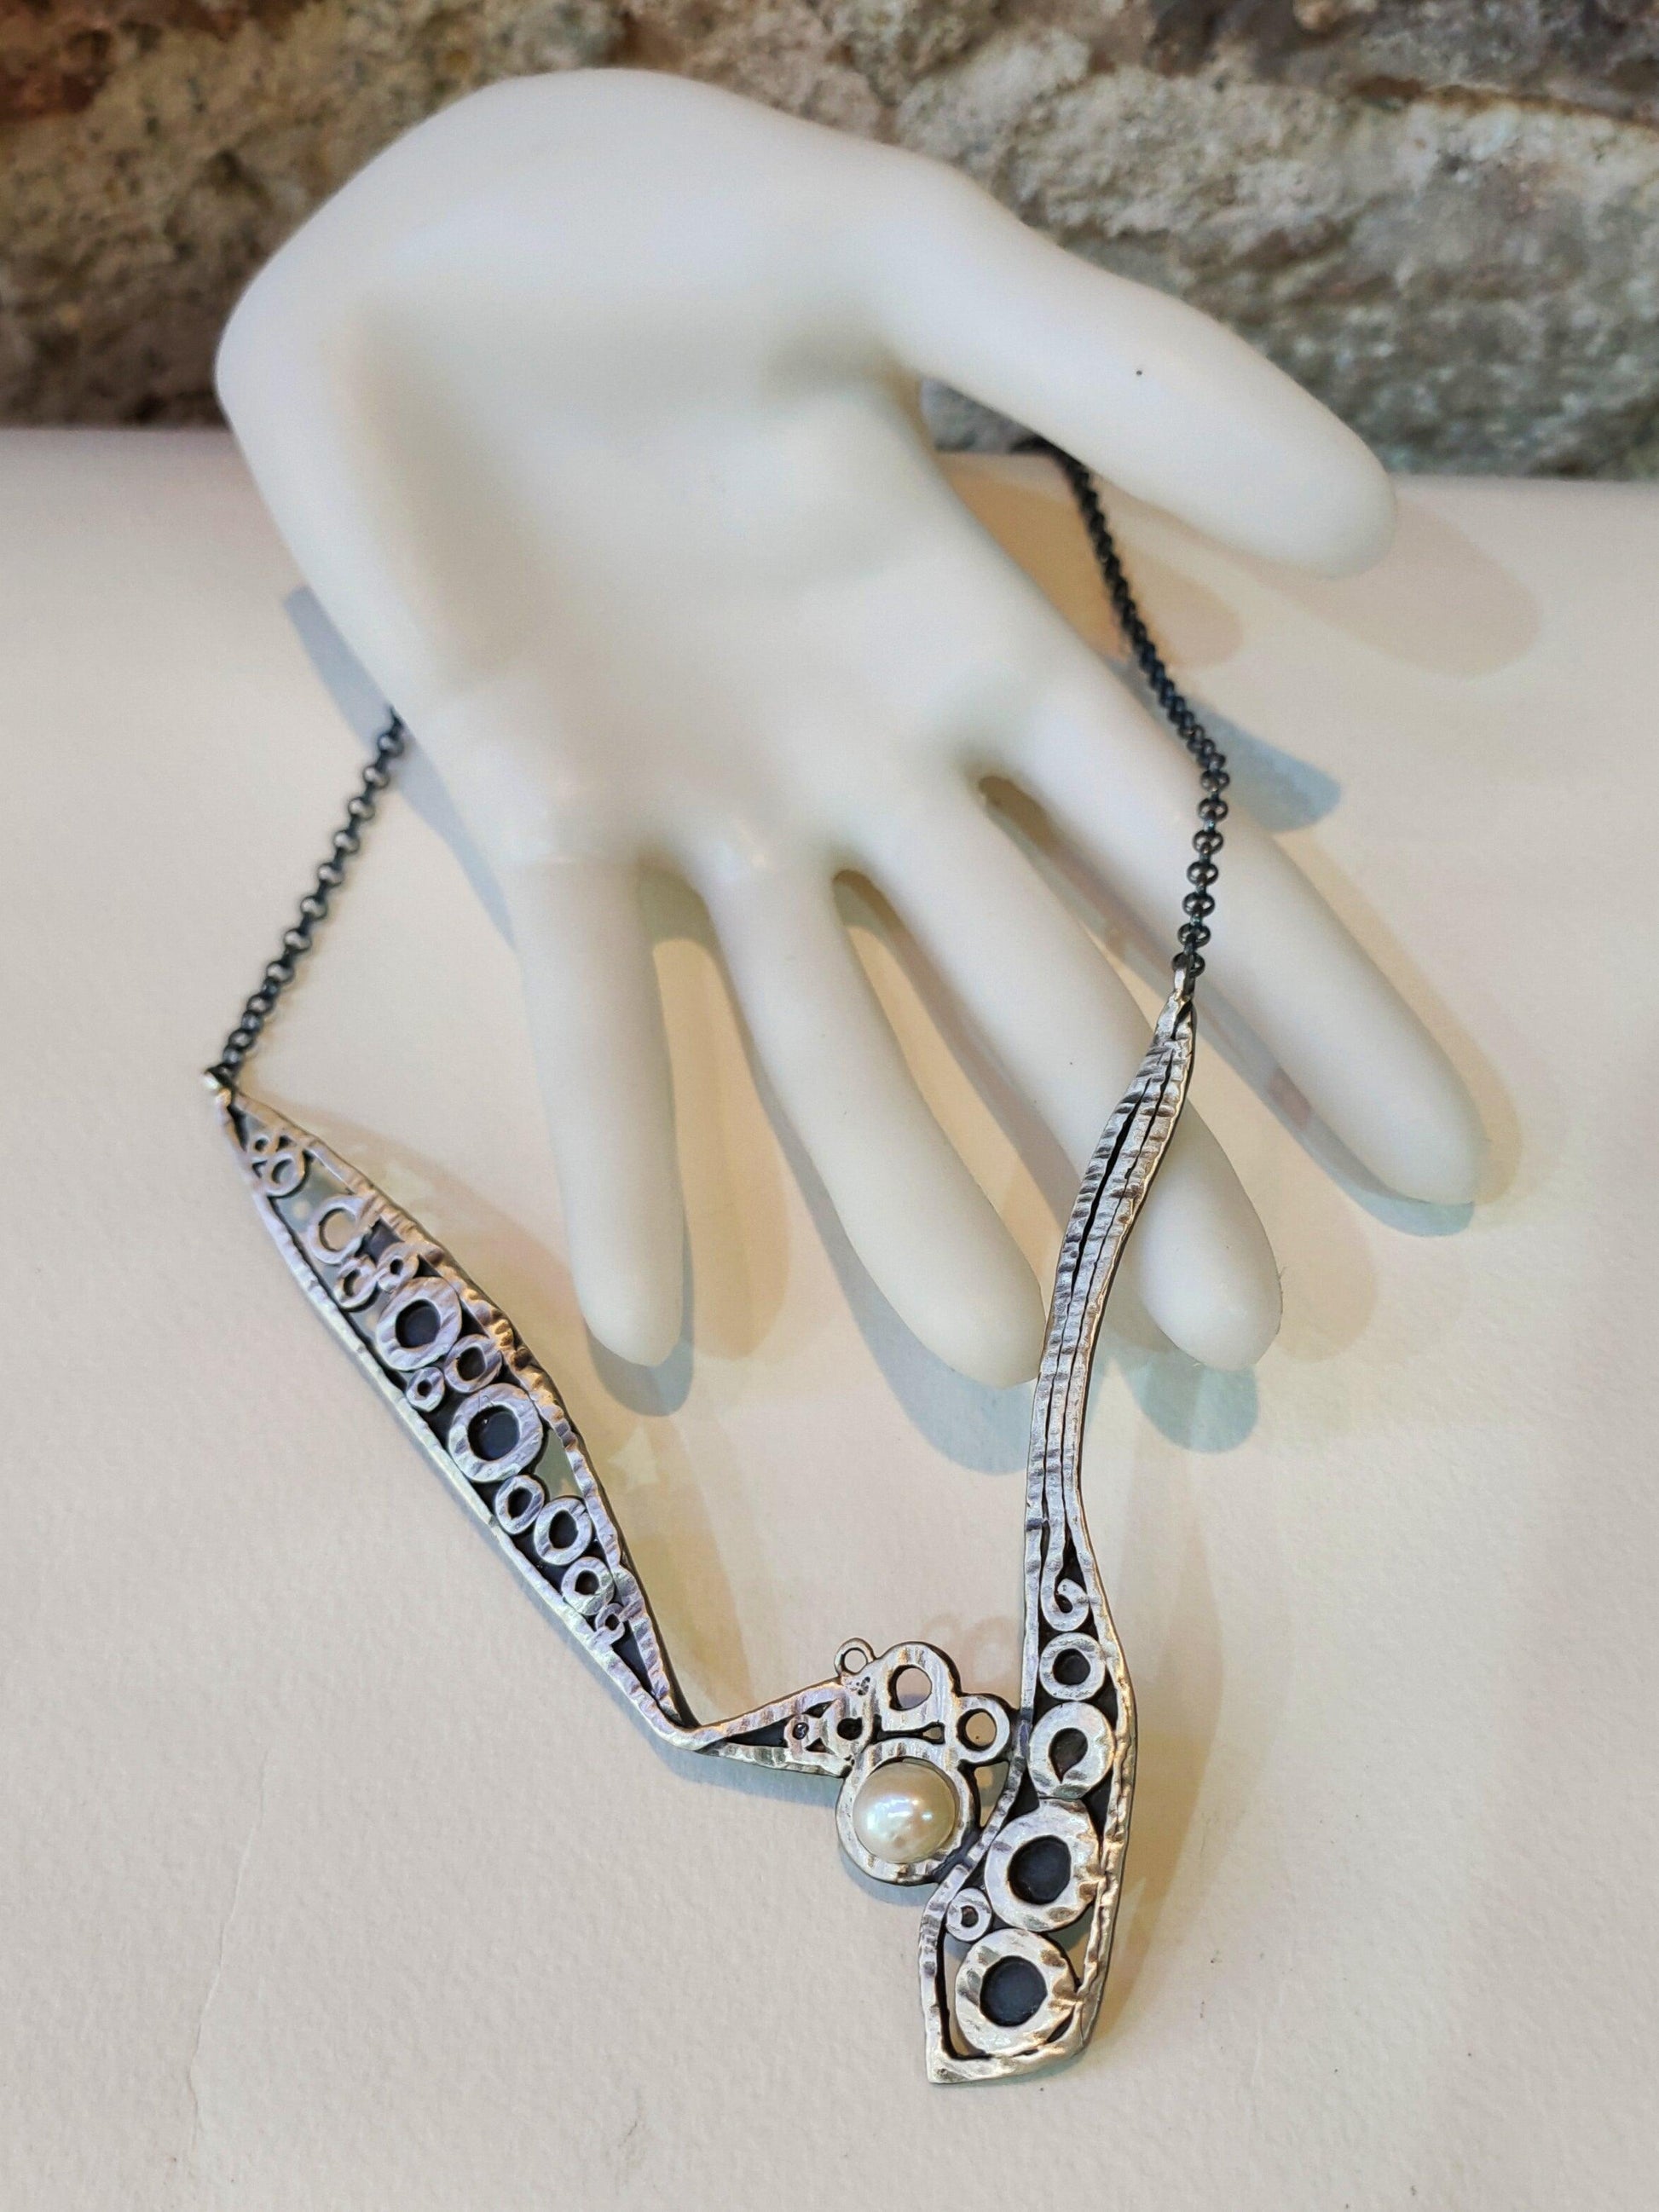 Collar exclusivo de plata con perla cultivada. Creación artesanal